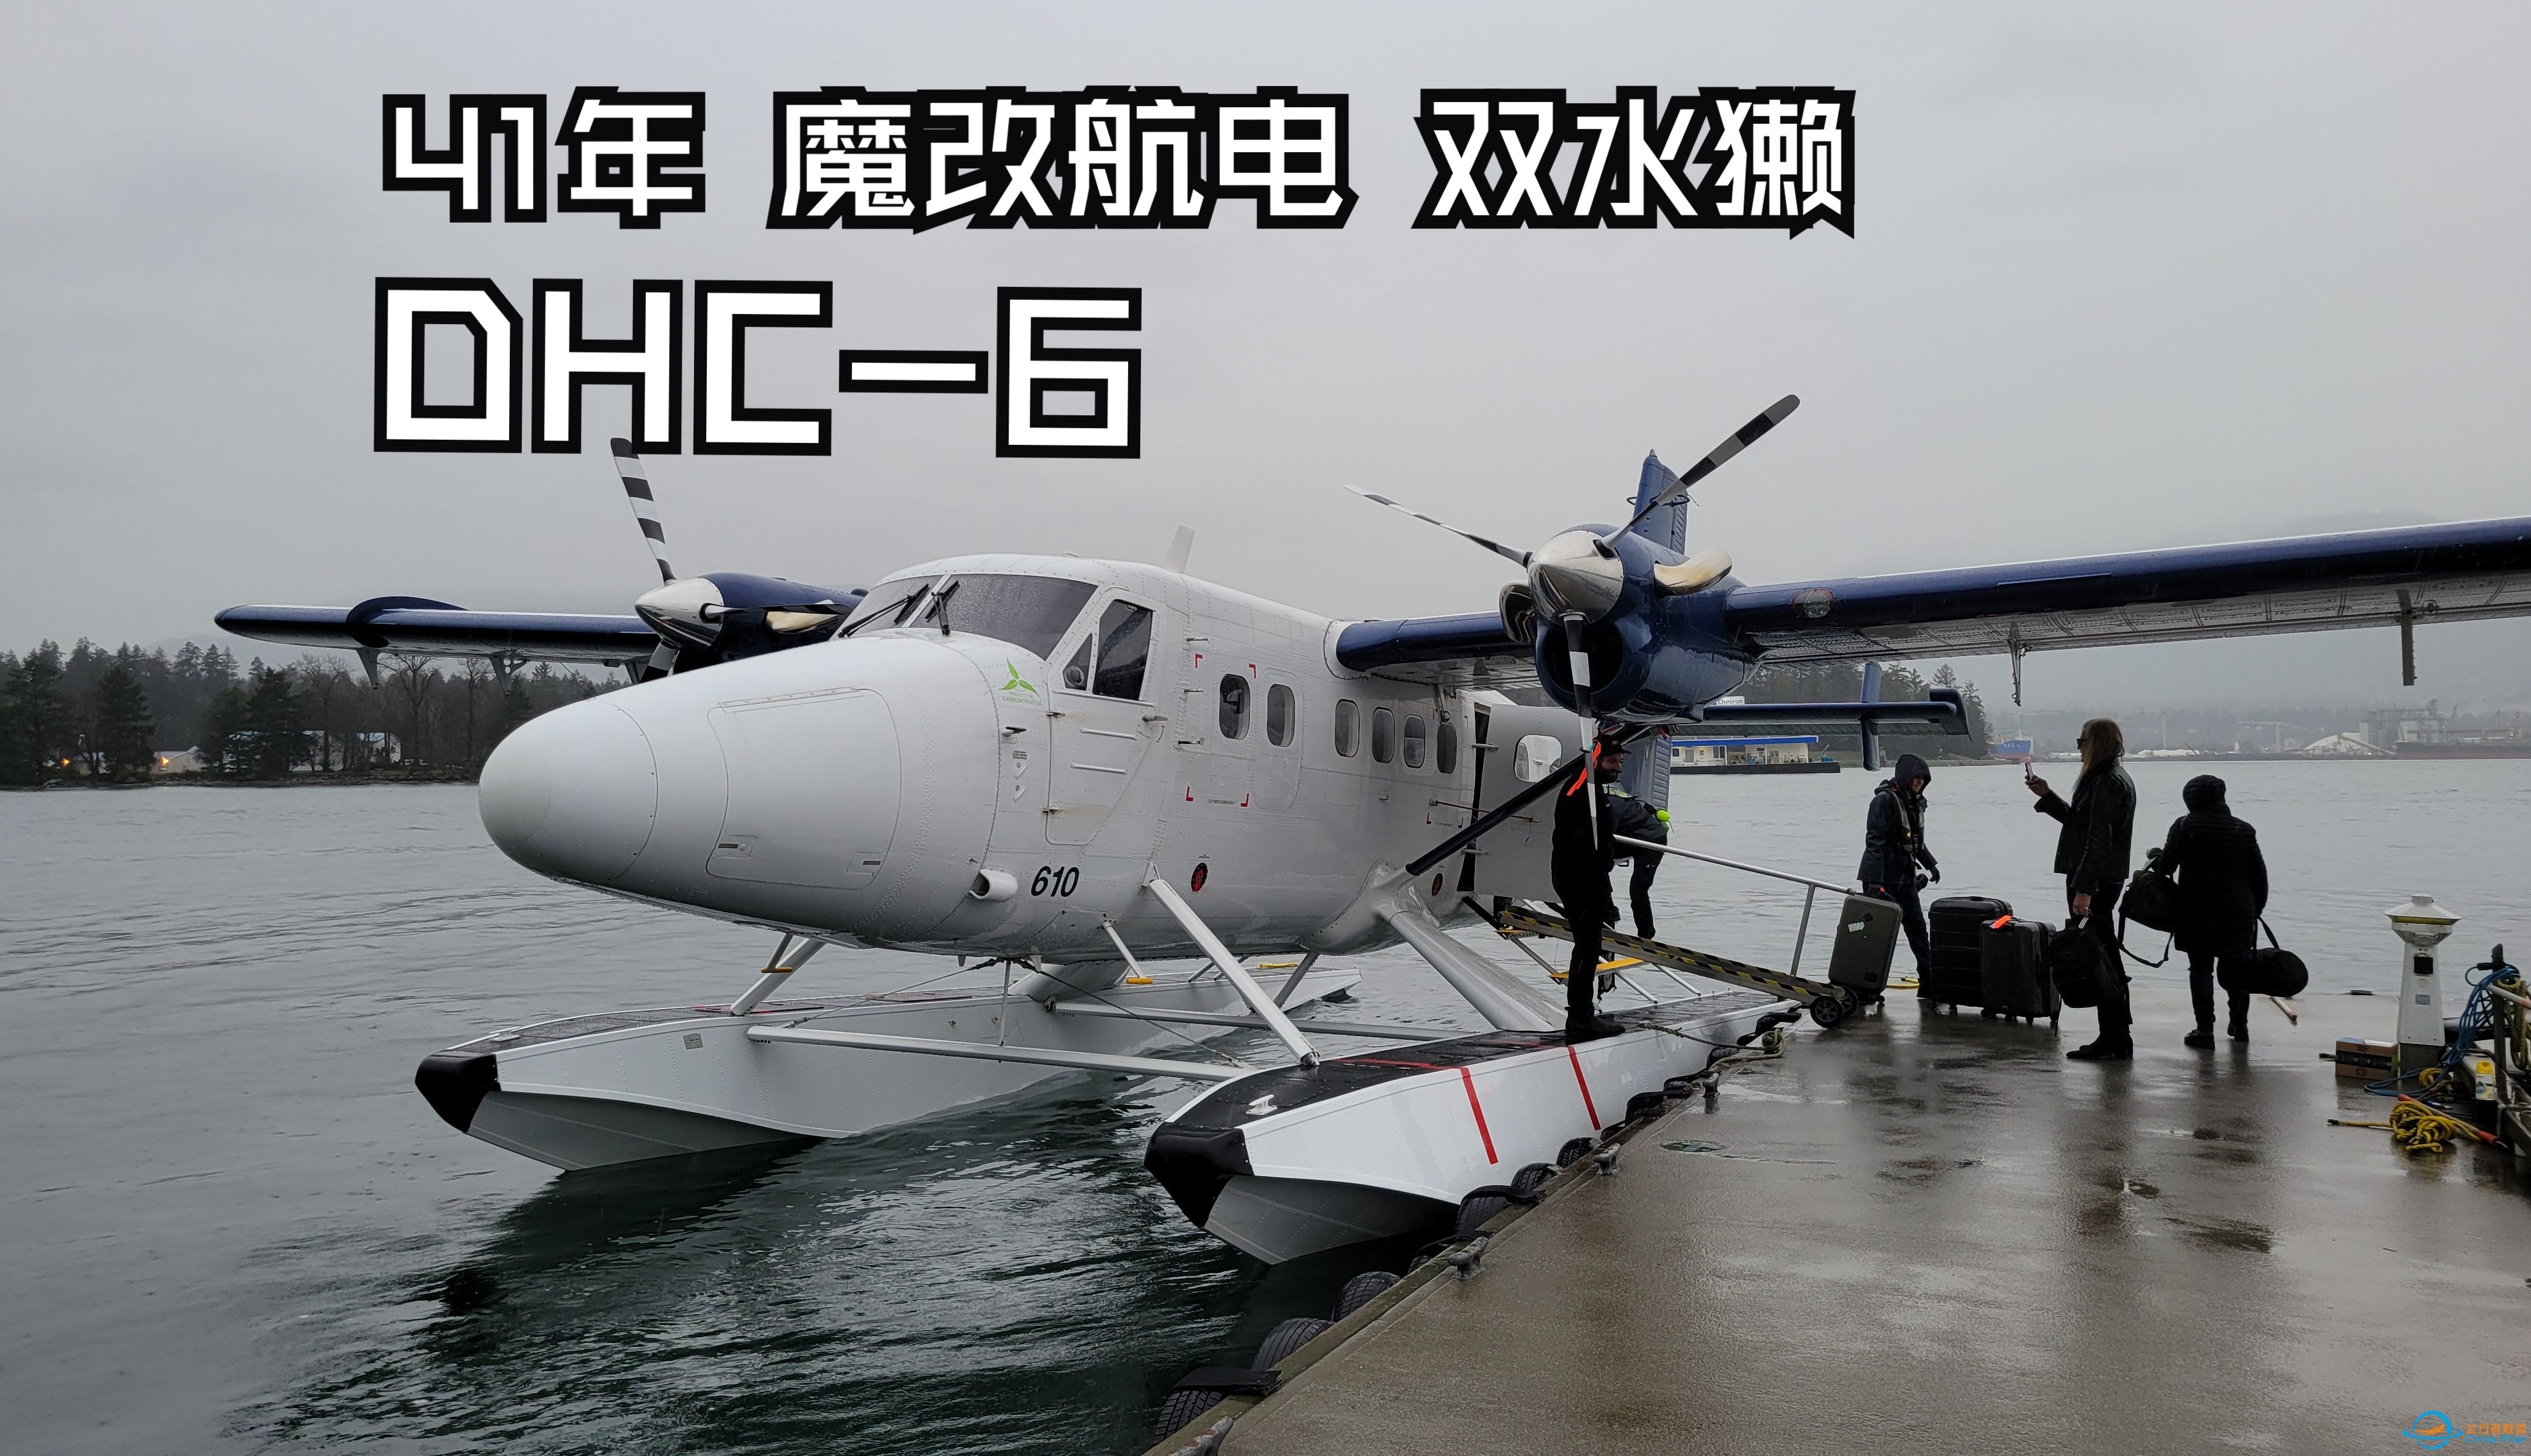 【飞行游记】41年的魔改老飞机？海港航空DHC-6双水獭水上飞机飞行体验-6646 